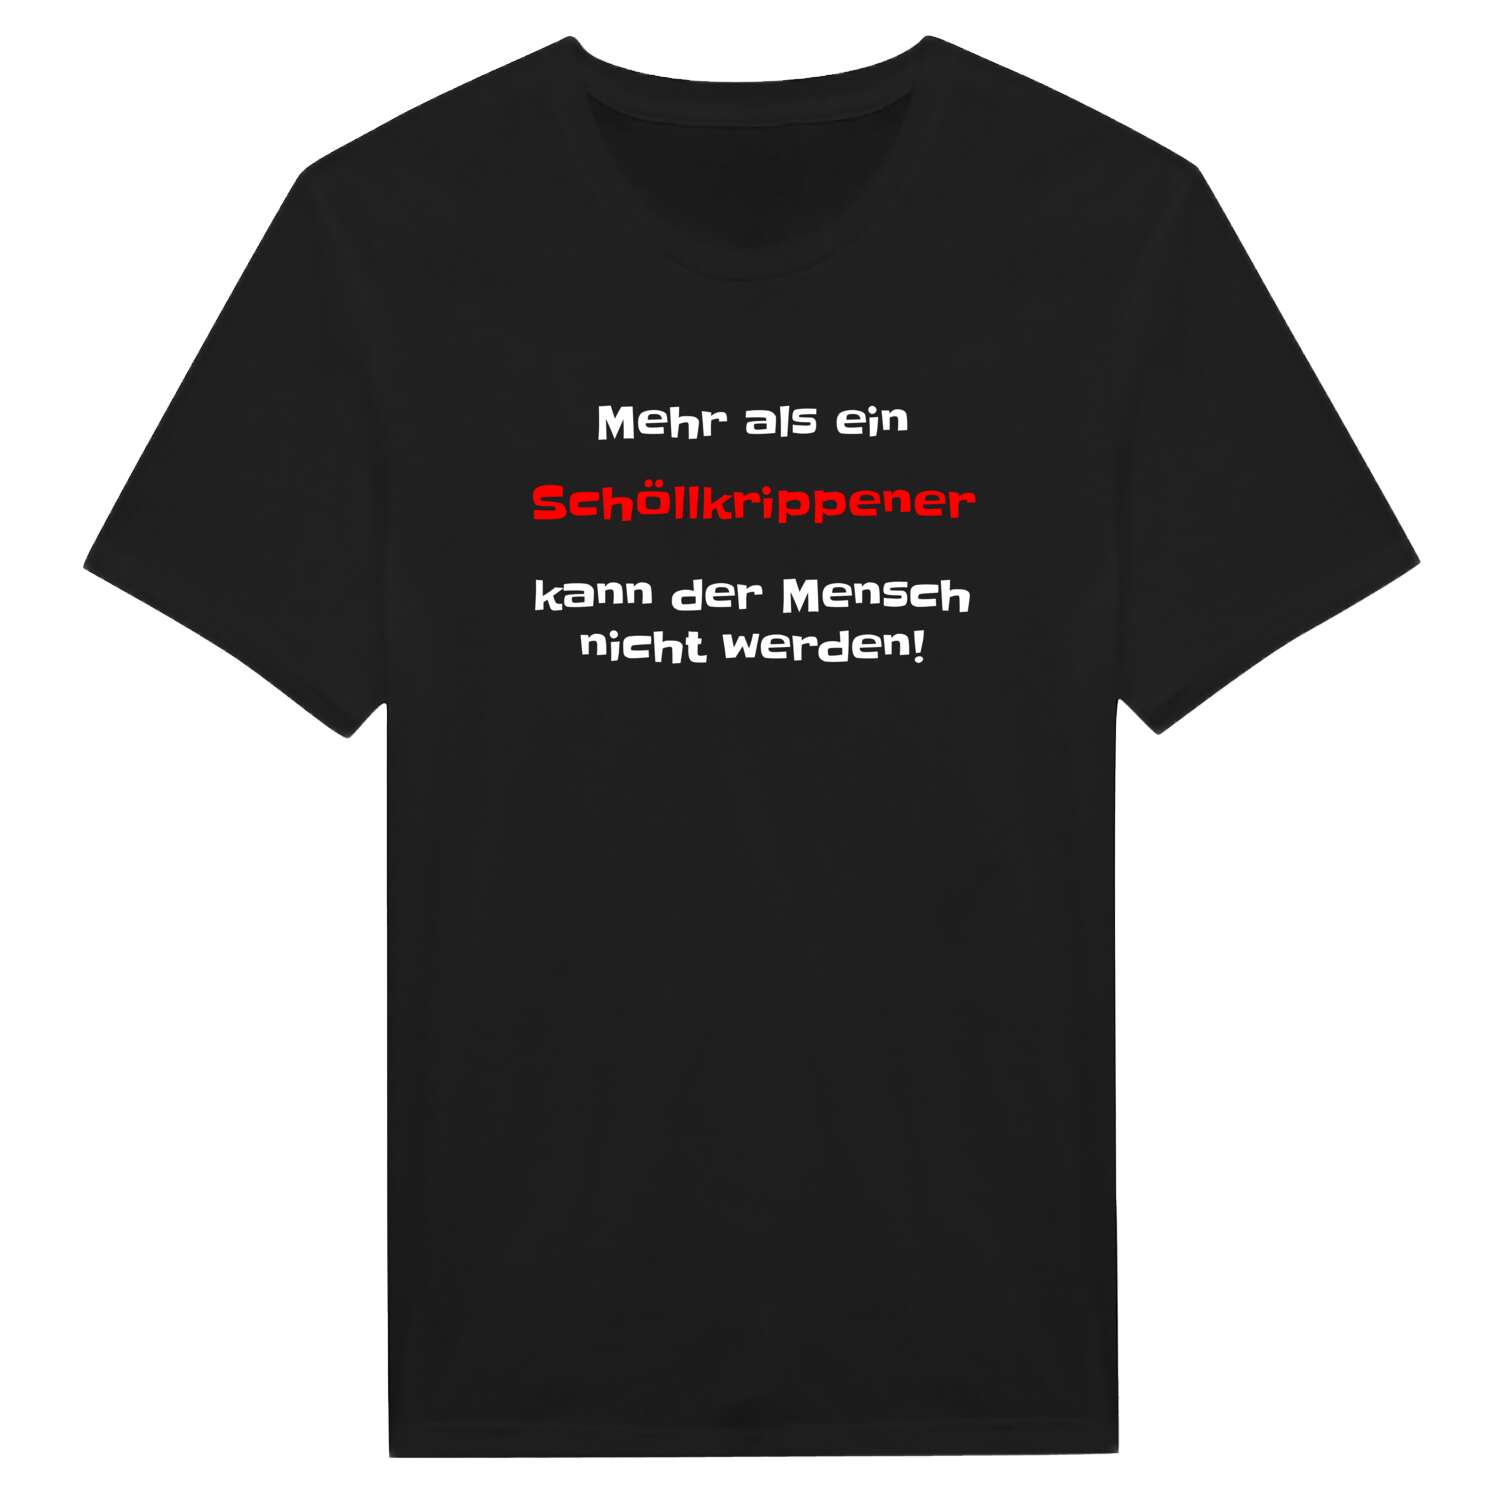 Schöllkrippen T-Shirt »Mehr als ein«